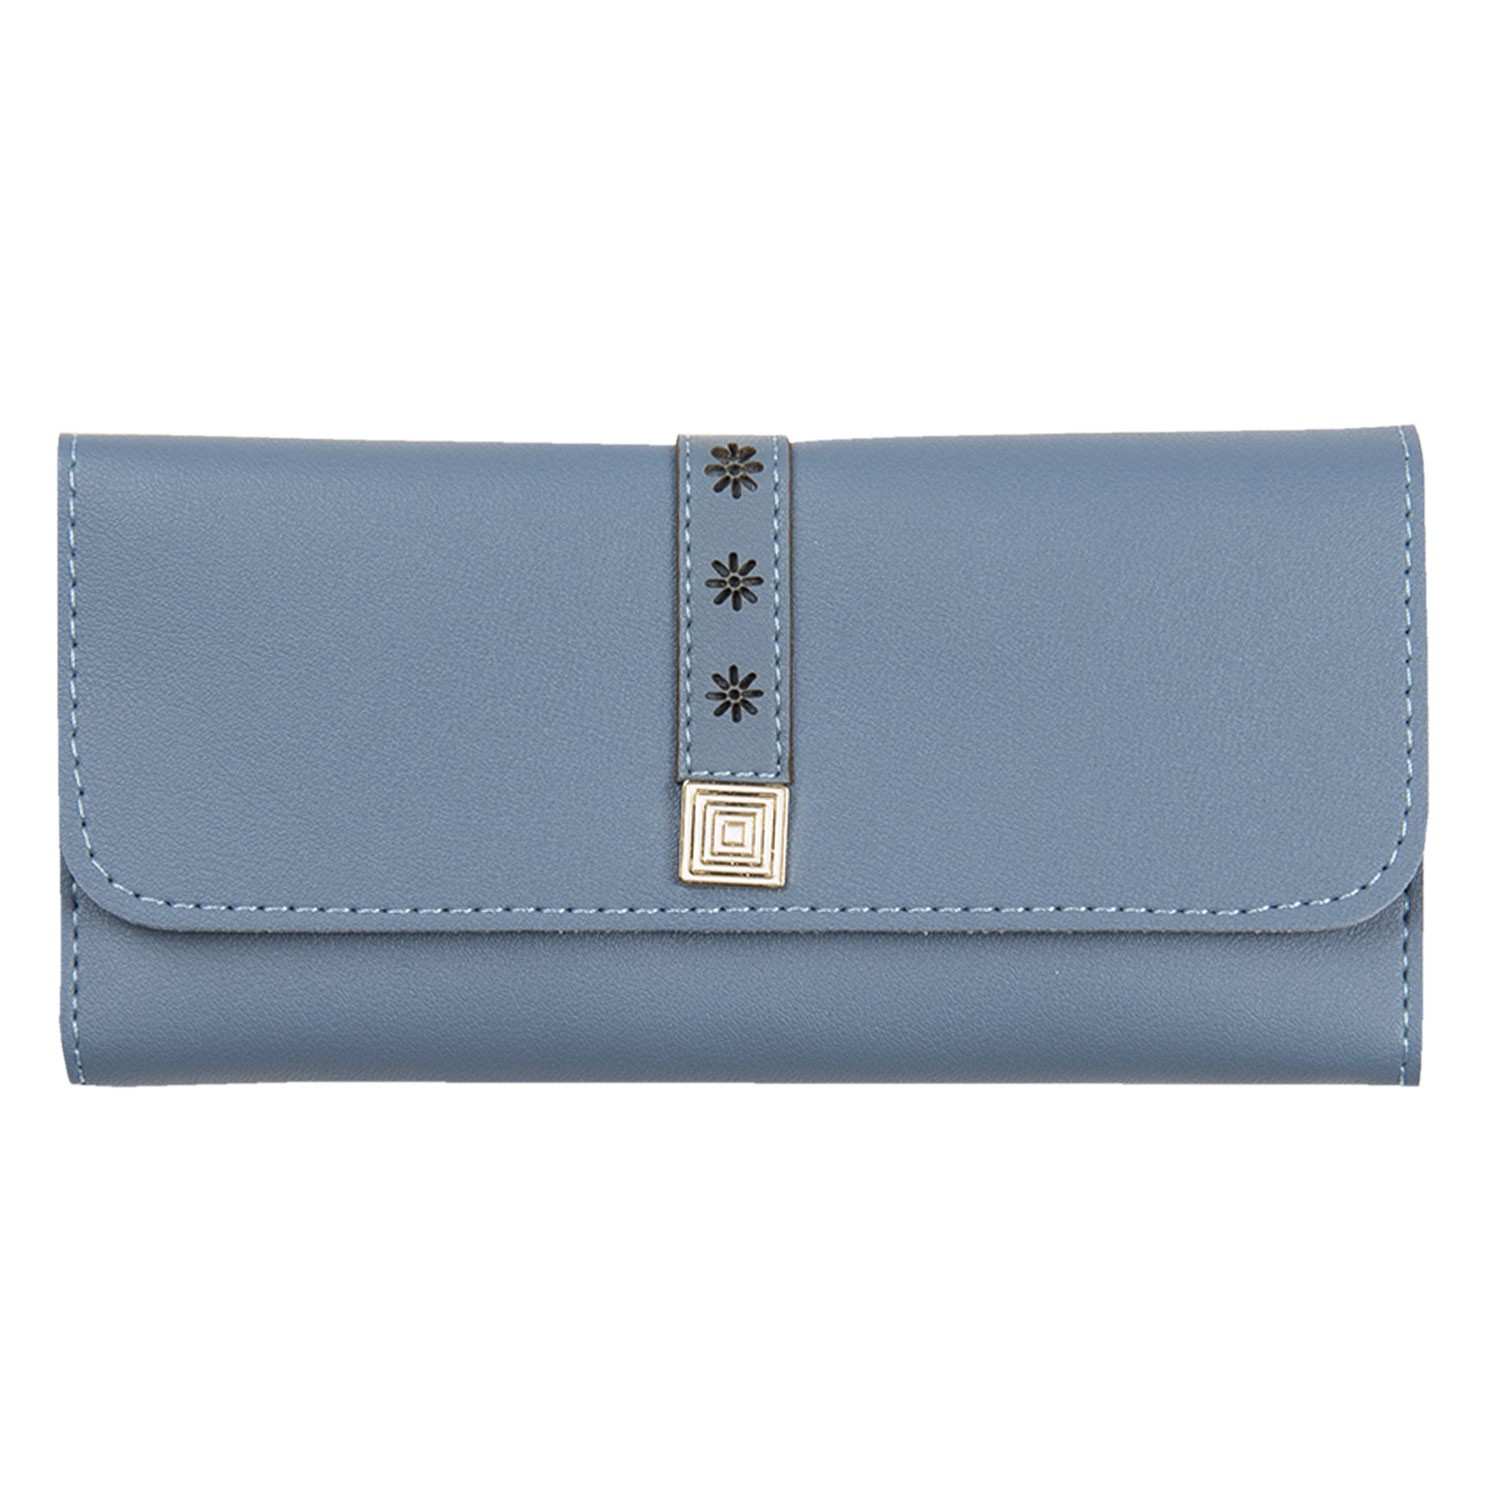 Modrá peněženka Flower se stříbrným zapínáním - 19*9 cm Clayre & Eef